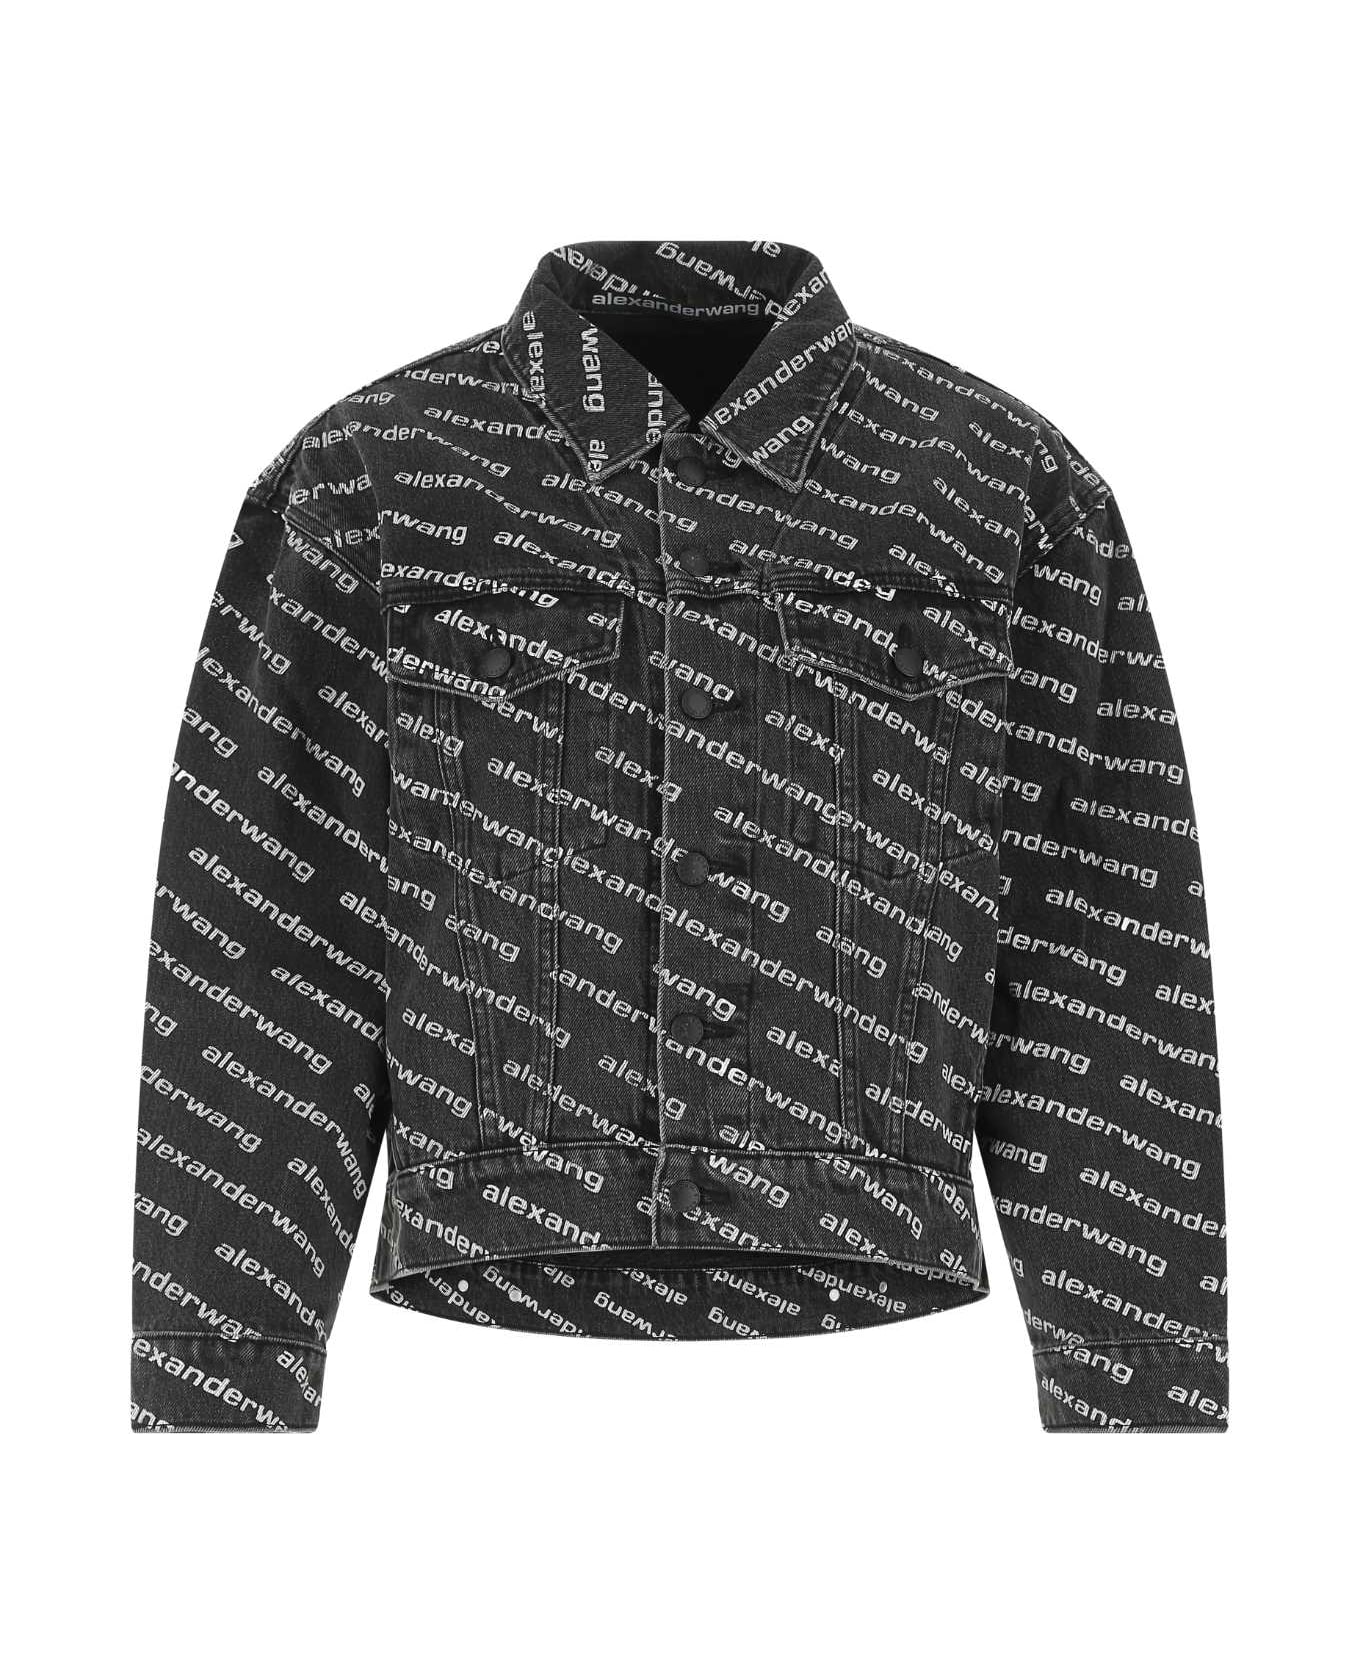 Alexander Wang Printed Denim Jacket - GREYAGEDWHITE ジャケット